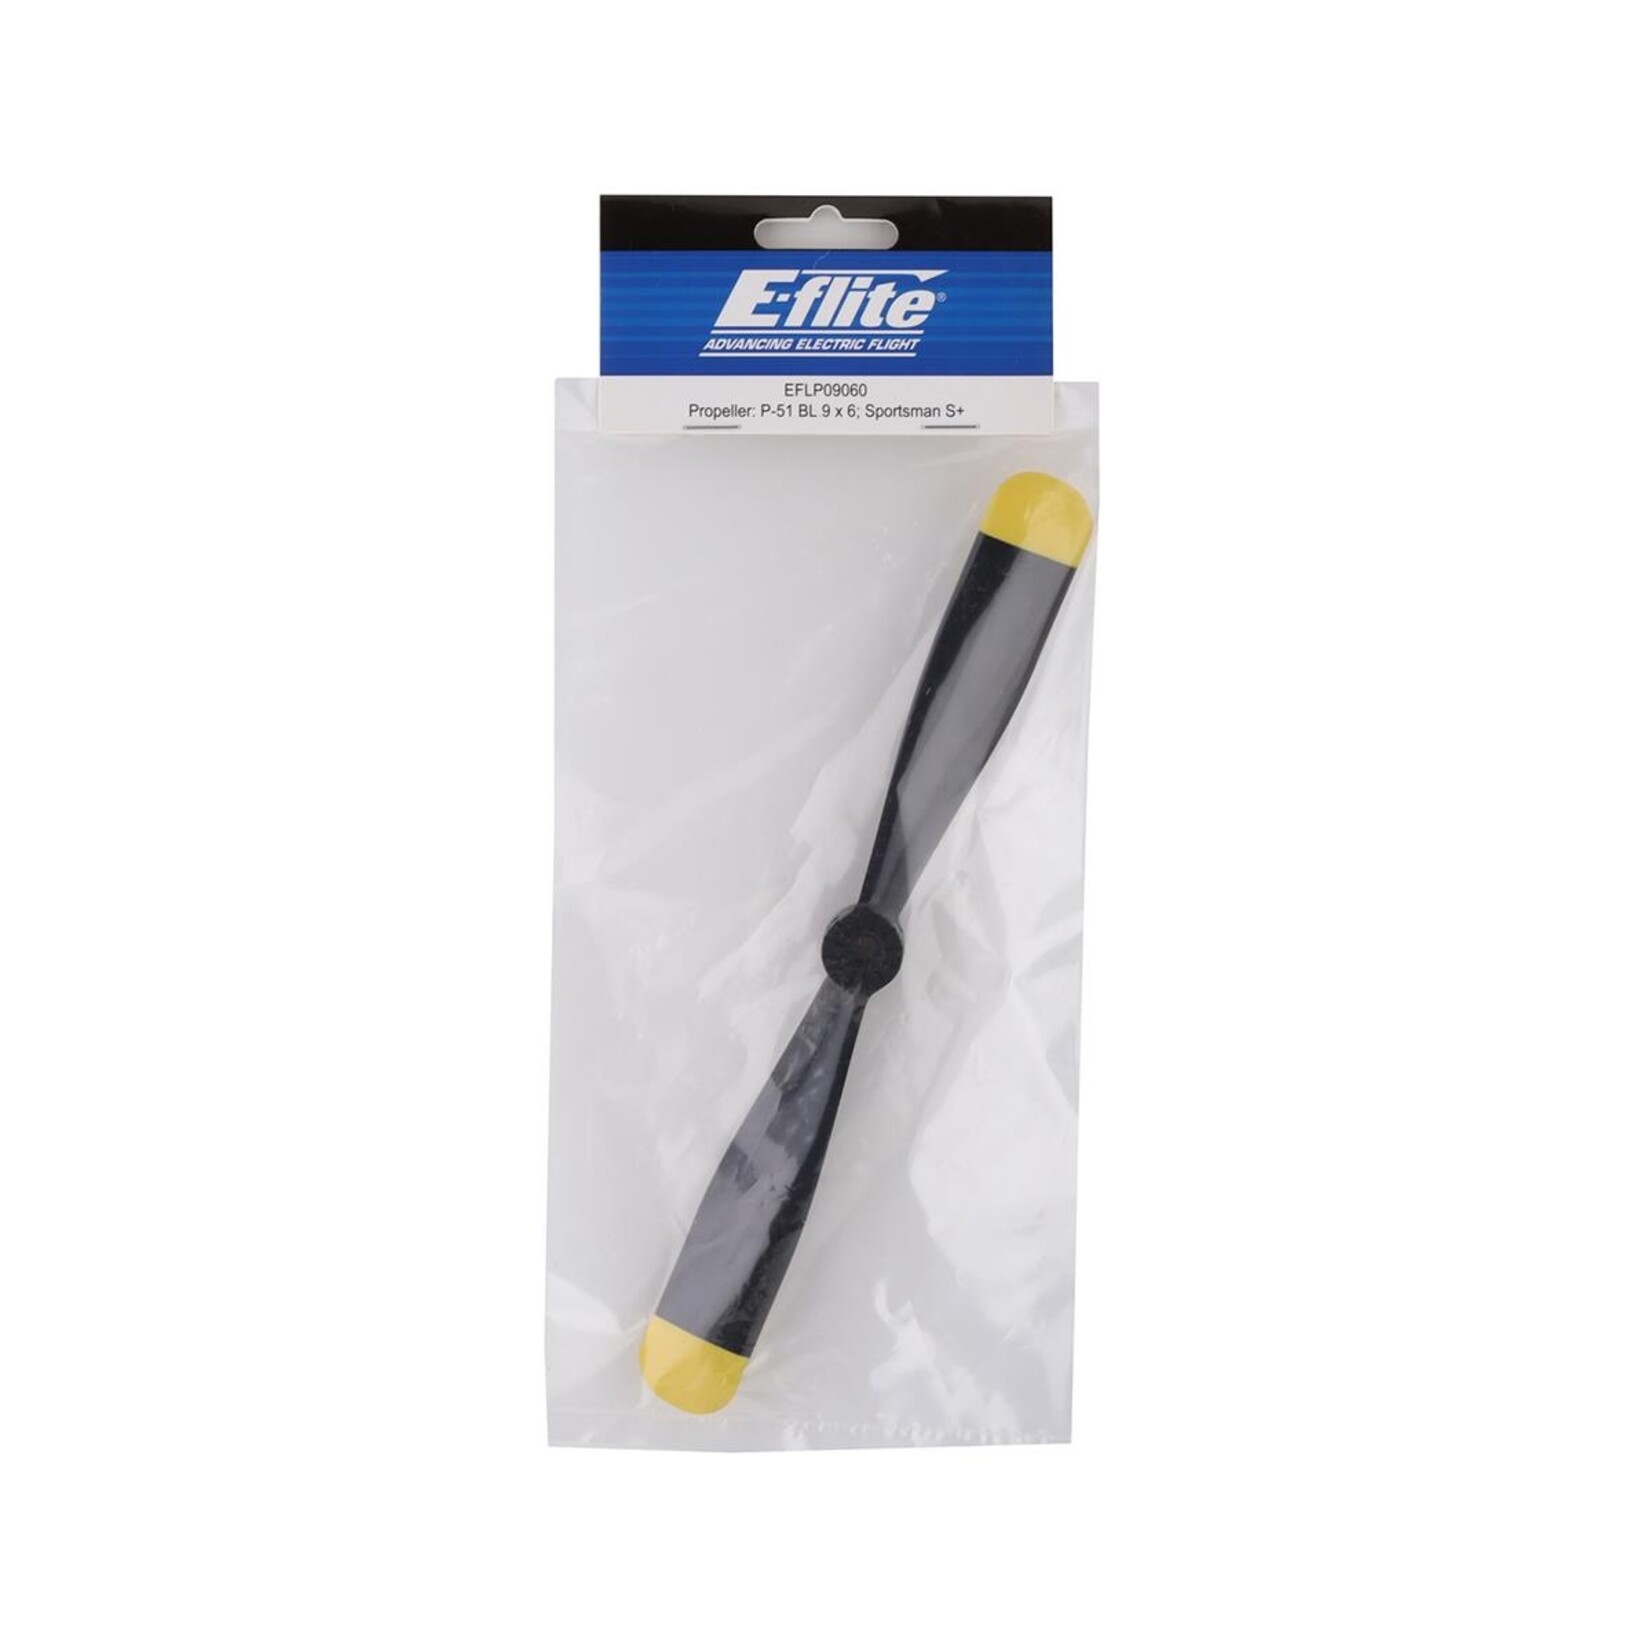 E-flite E-flite 9x6 P-51 Brushless Sportsman S+ Propeller #EFLP09060